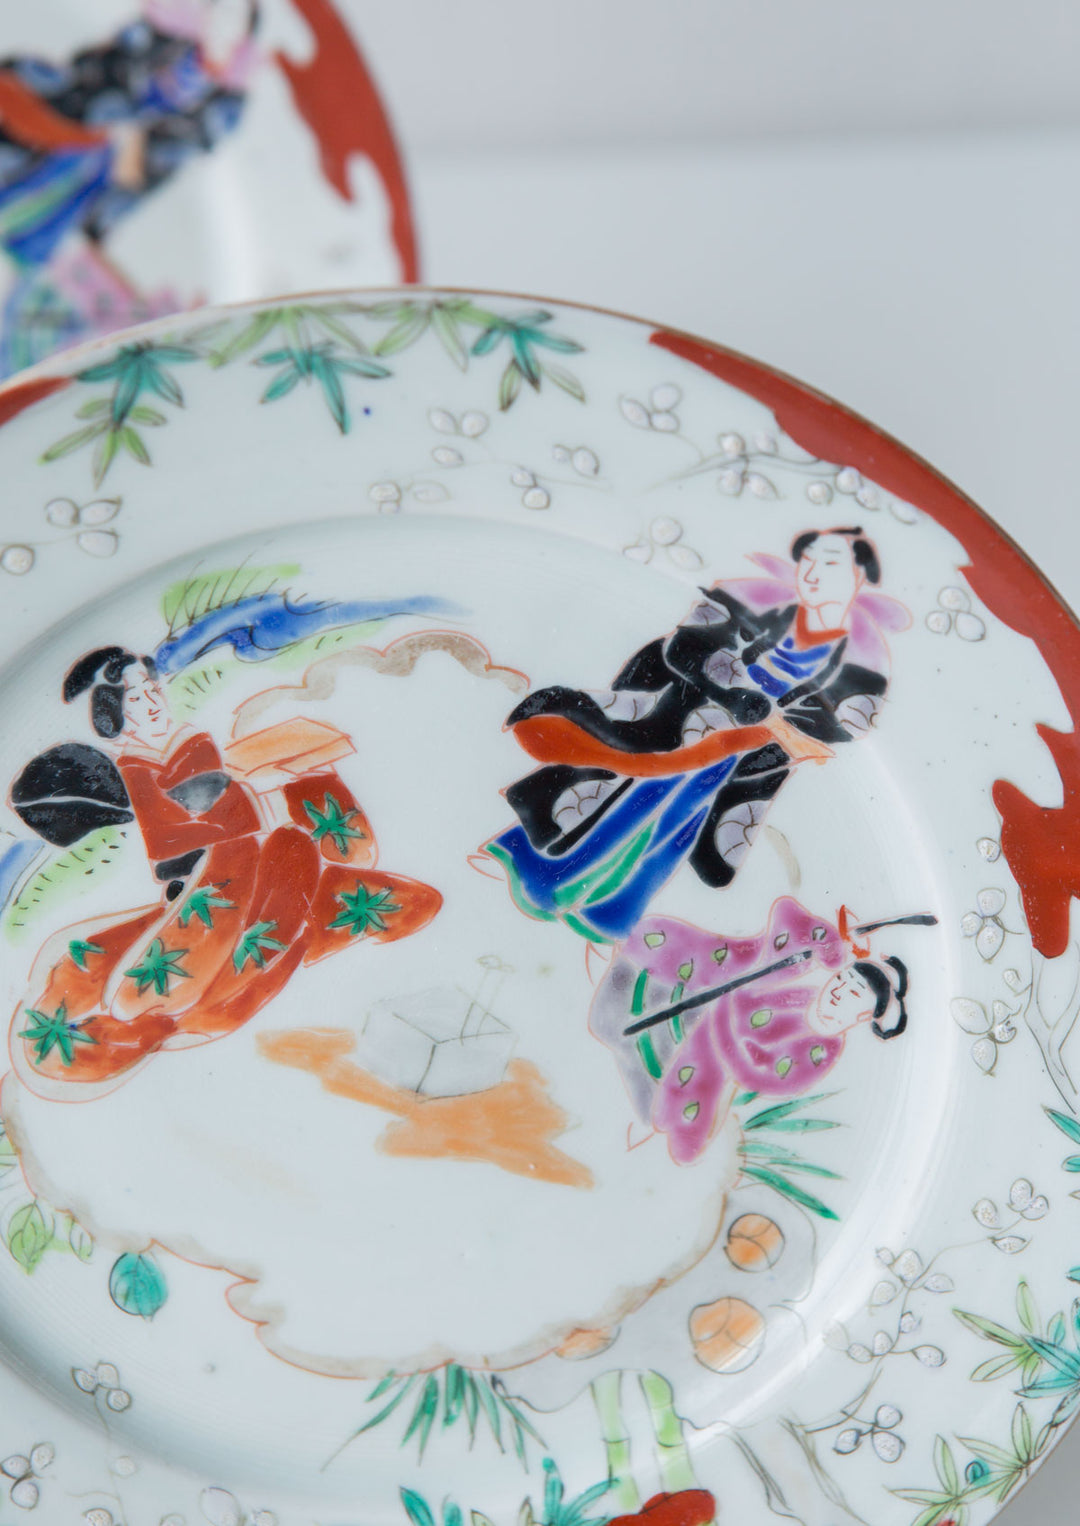 Platos japoneses porcelana pintados a mano geishas (VENDIDOS)